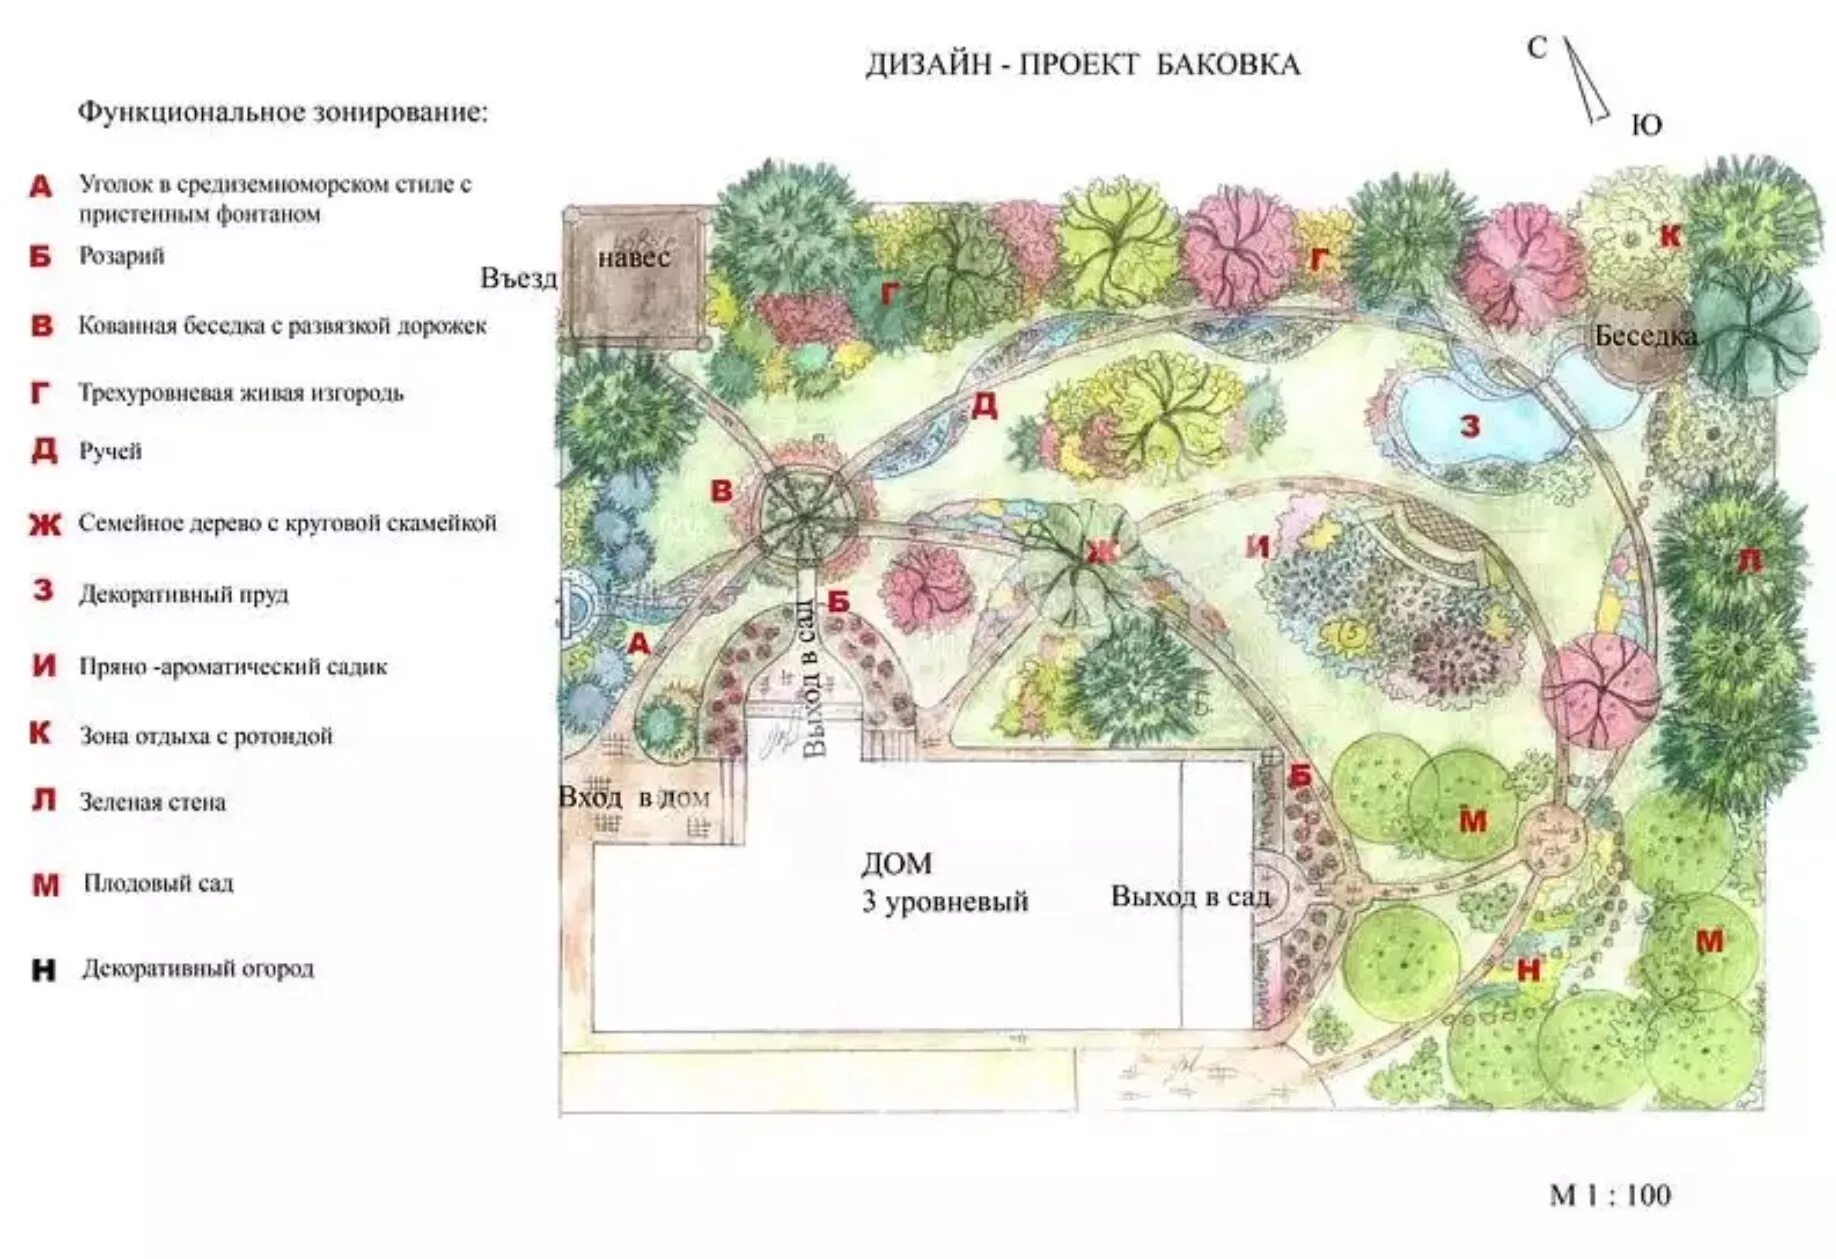 План участка культурного ландшафта вашей местности. План схема озеленения территории детского сада. Дизайн ландшафтный схема. Примеры эскизов ландшафтного дизайна. Схема ландшафтного дизайна участка.